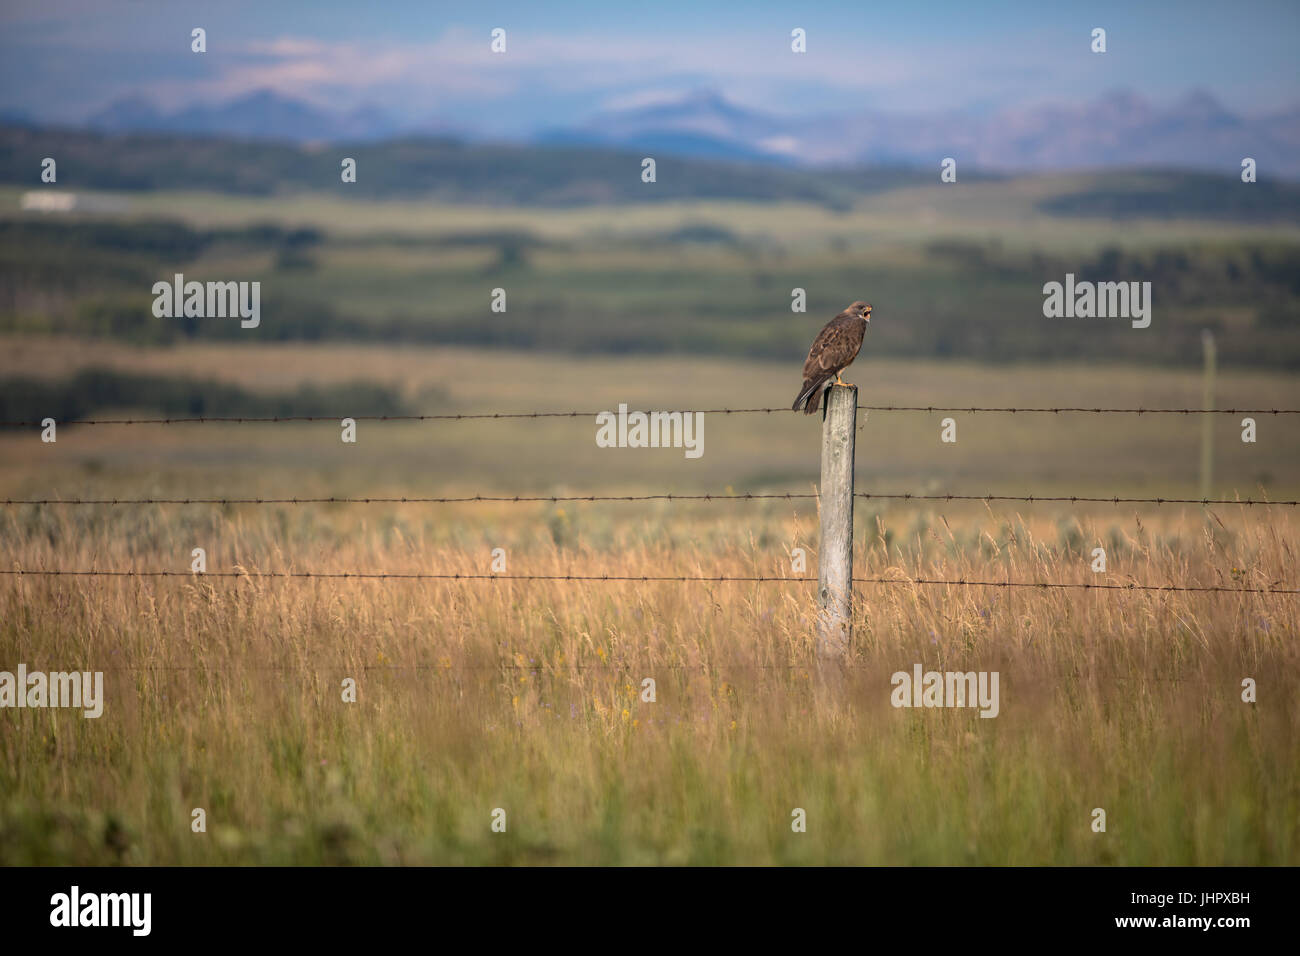 Un très large red-tailed hawk se trouve perché sur le poteau de clôture à la recherche de proies au petit matin. Banque D'Images